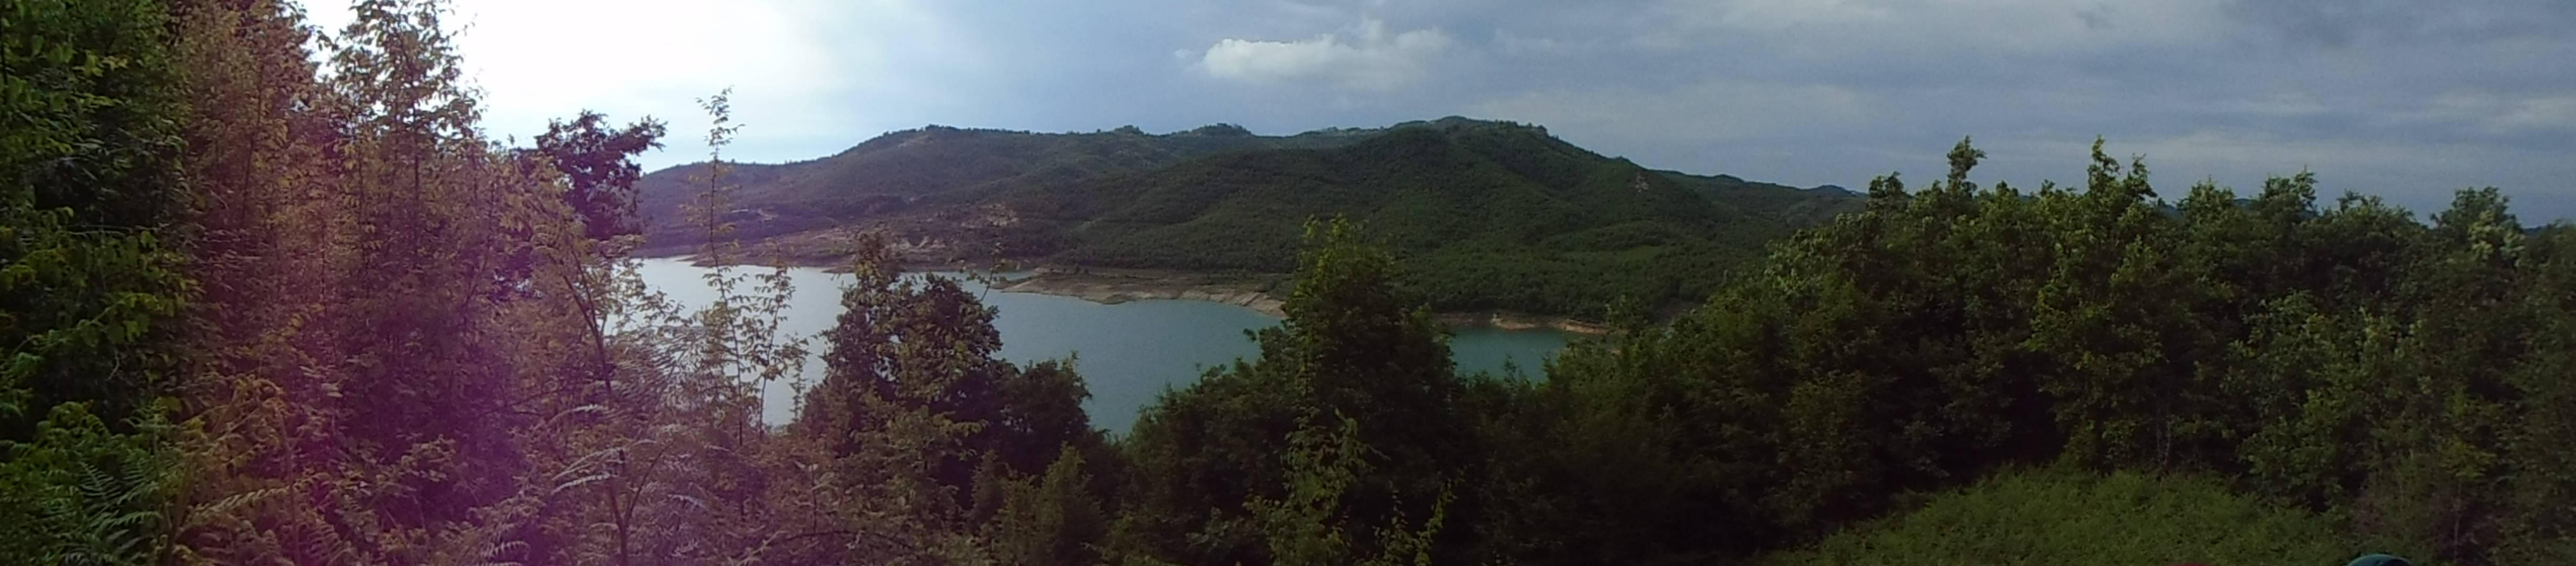 Albania Lake Shkafane Background